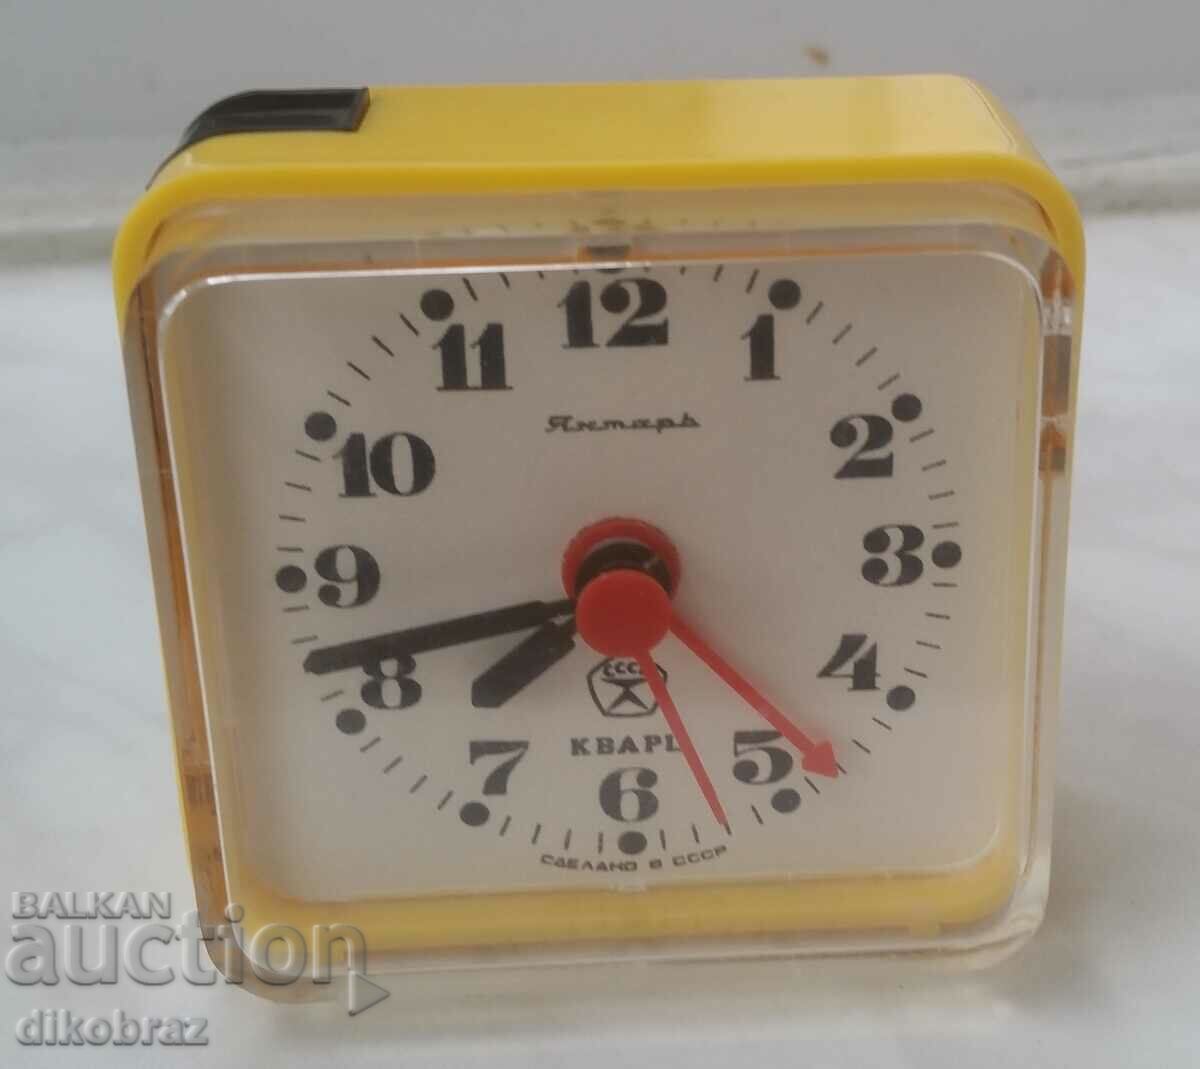 Επιτραπέζιο ρολόι Amber/quartz - κατασκευασμένο στην ΕΣΣΔ από μια δεκάρα